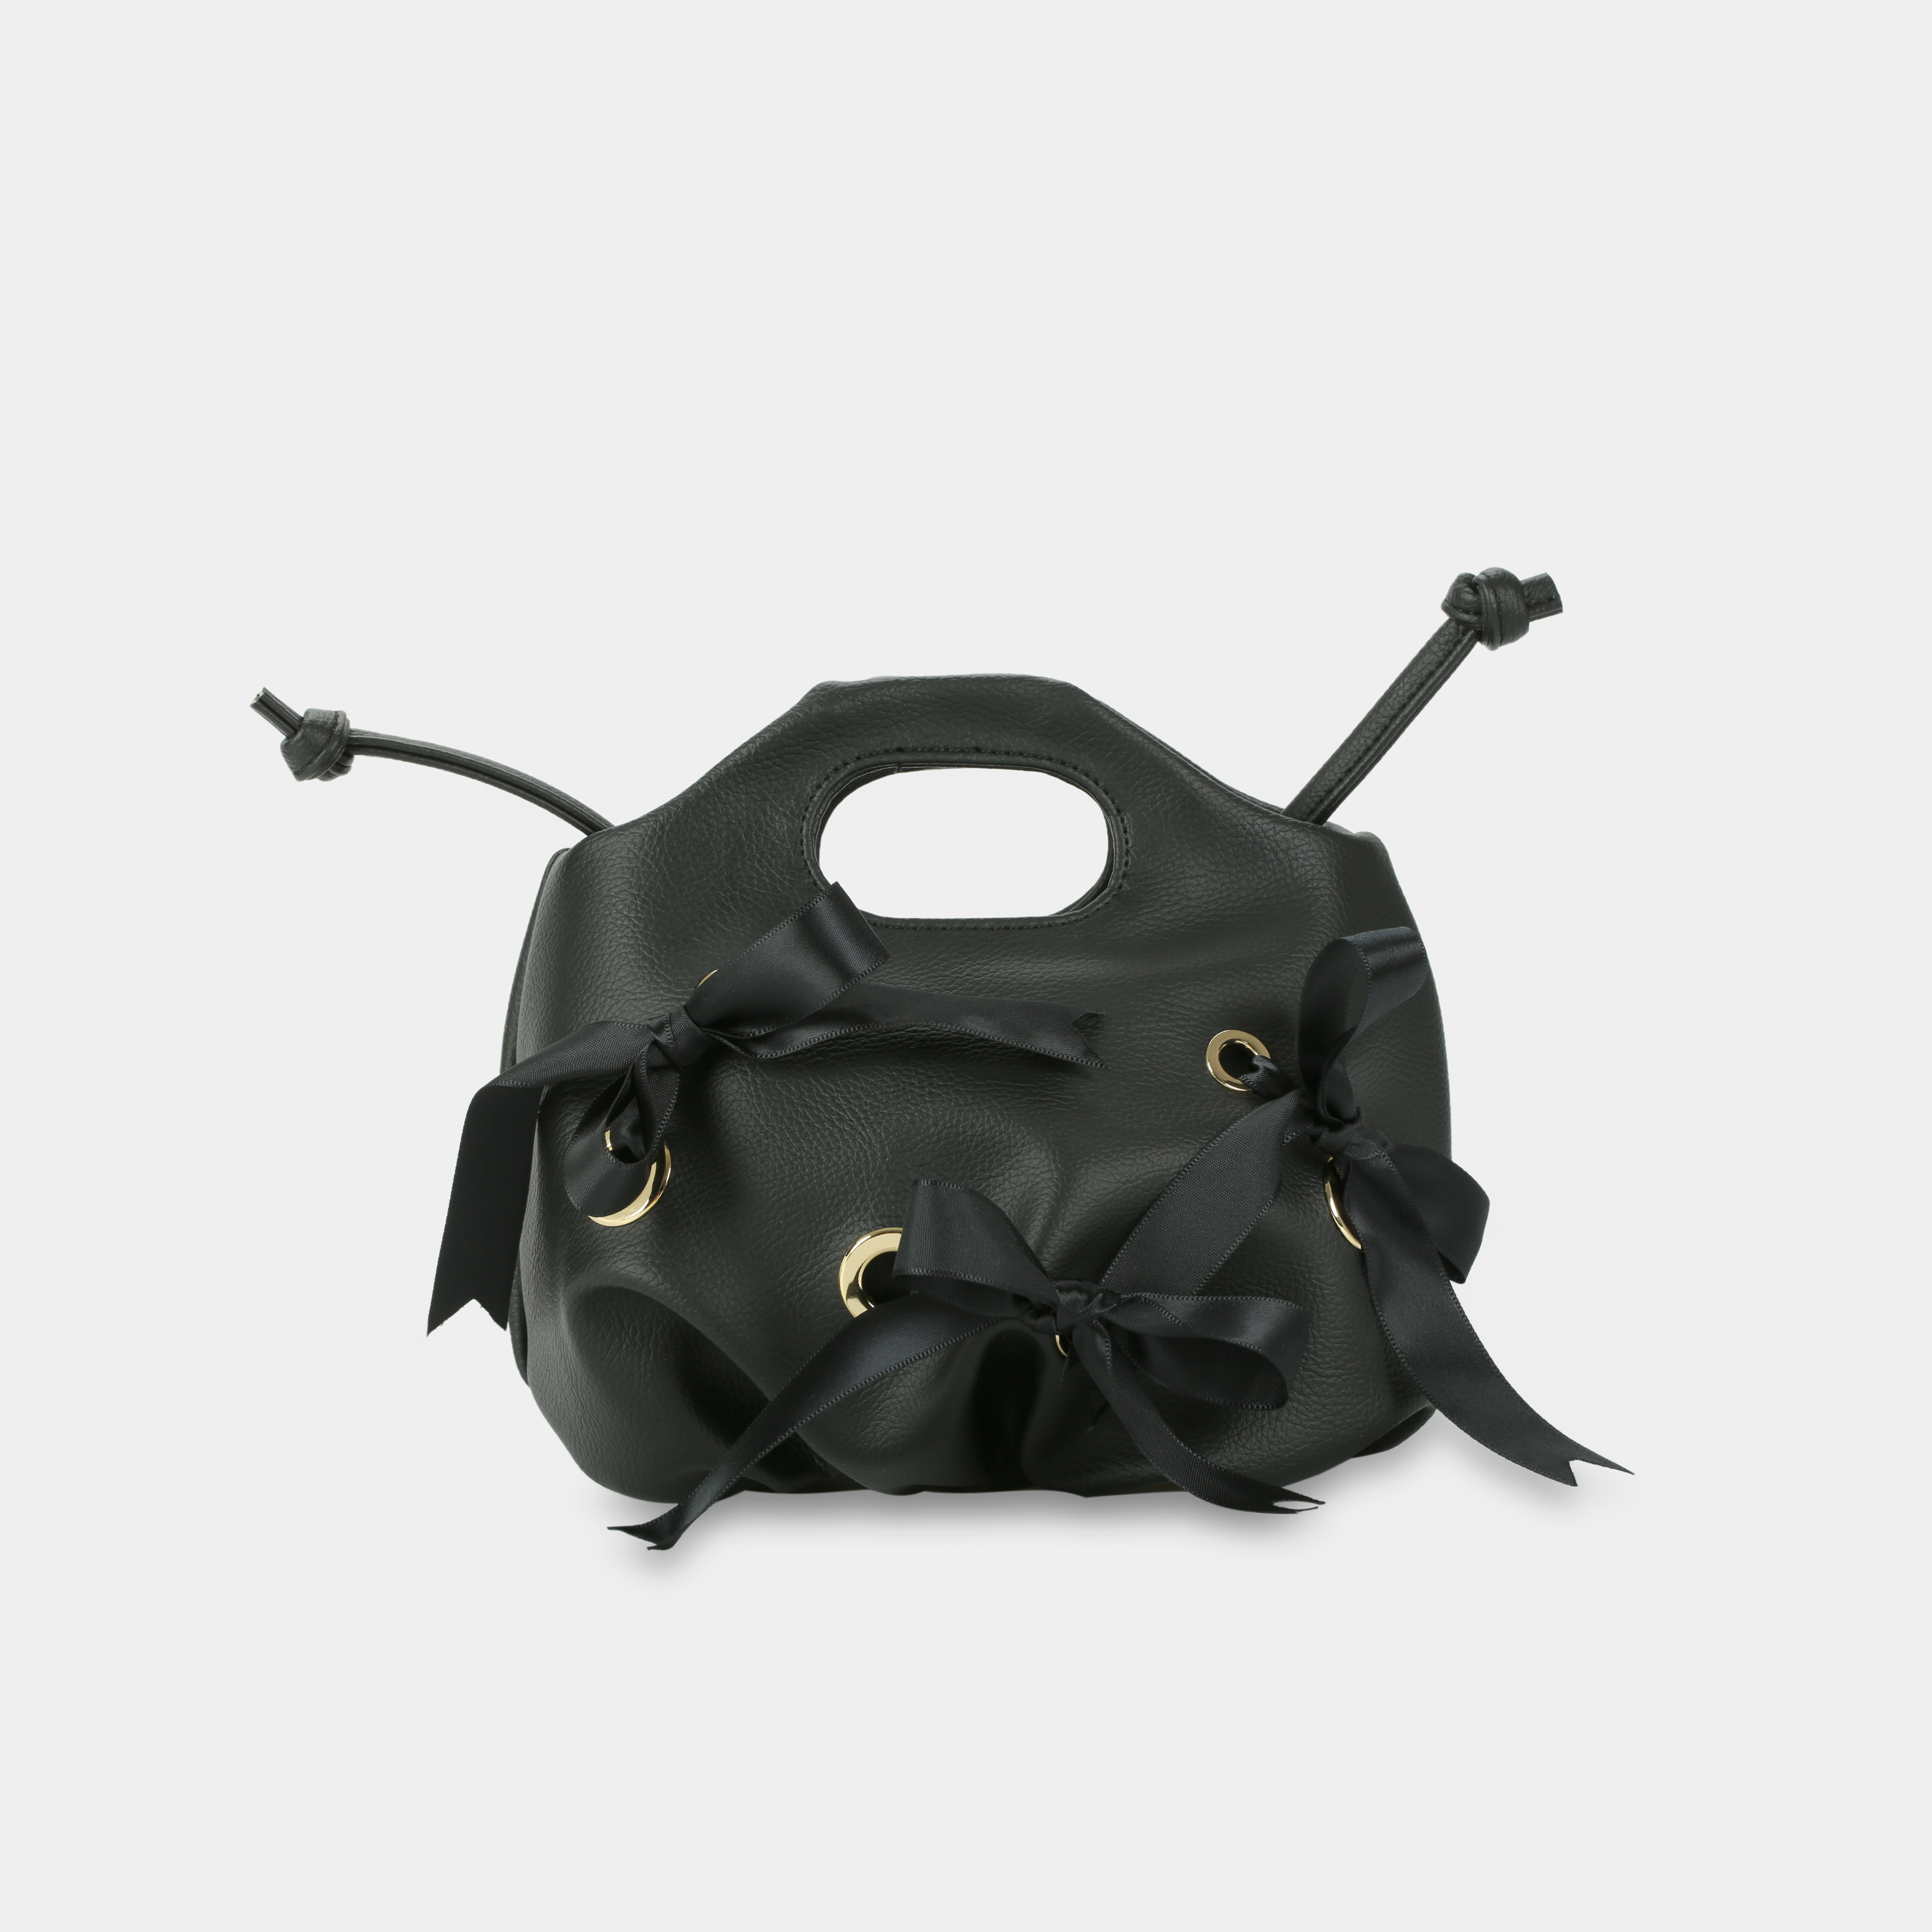 Flower Mini Eyelet & Bow handbag in black